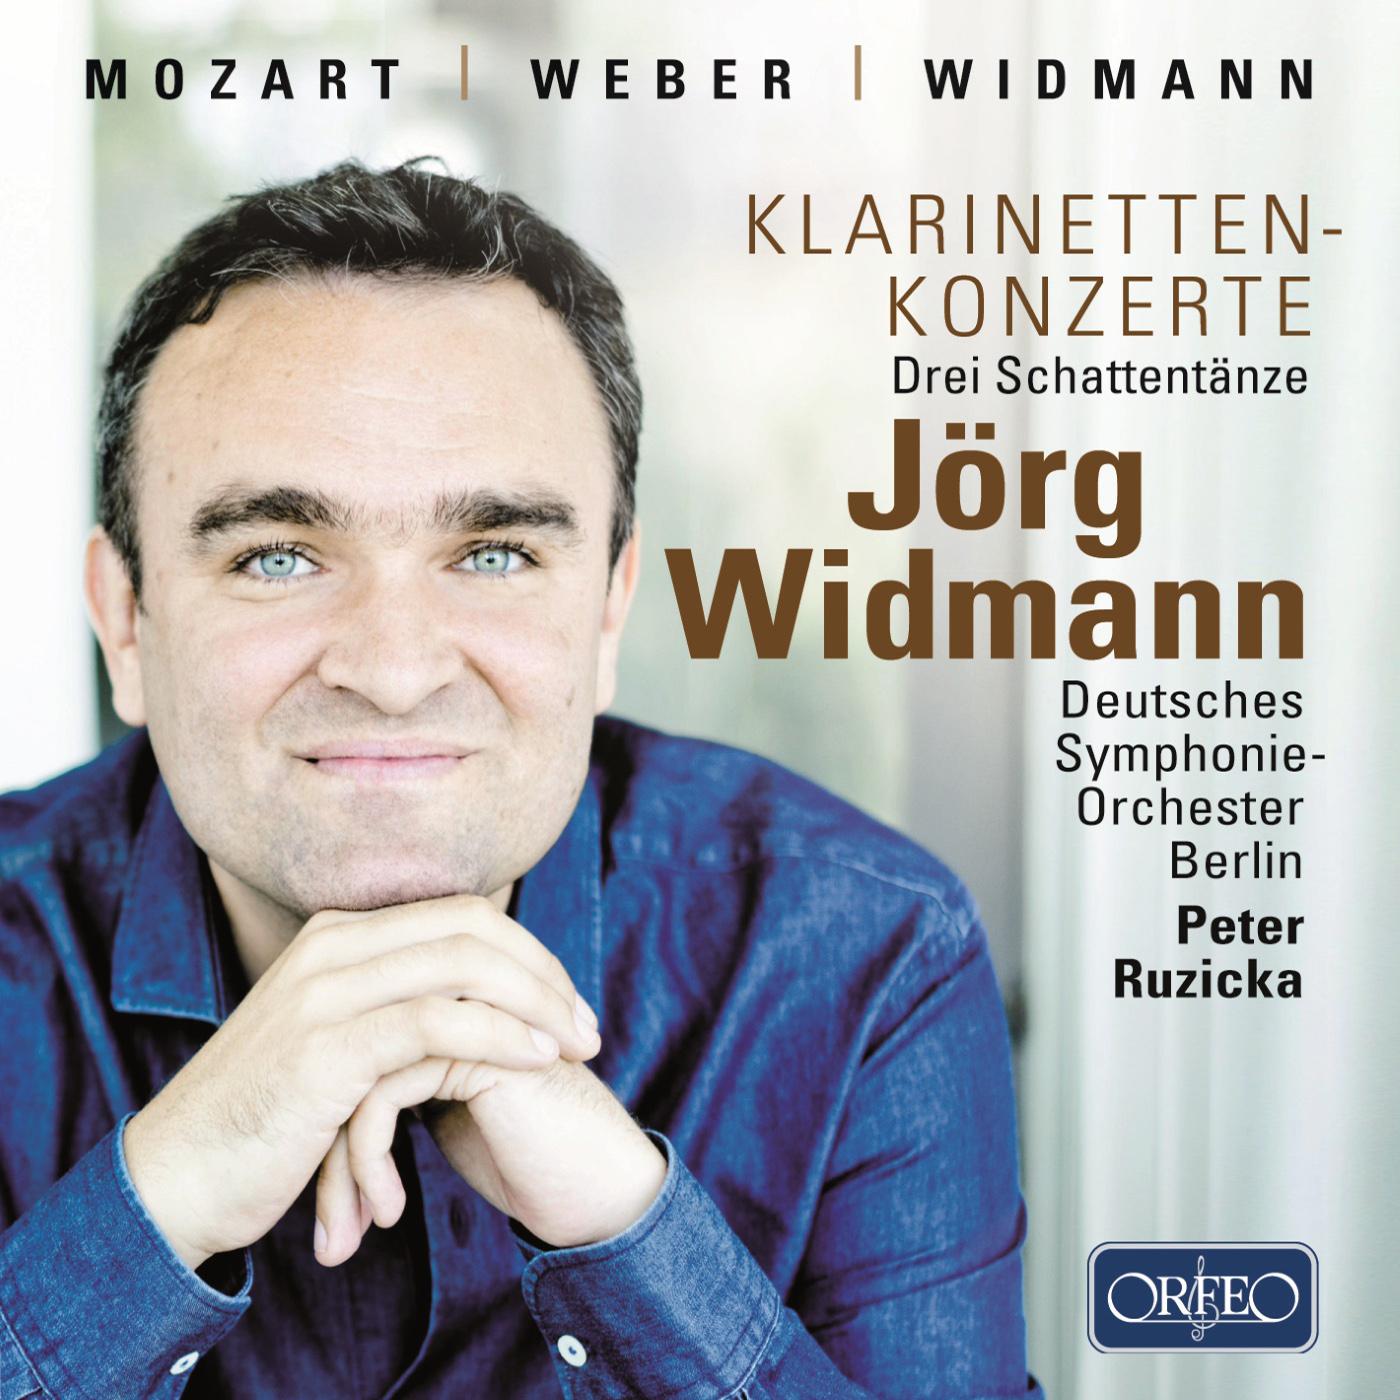 Clarinet Recital: Widmann, J rg  MOZART, W. A.  WIDMANN, J.  WEBER, C. M. von